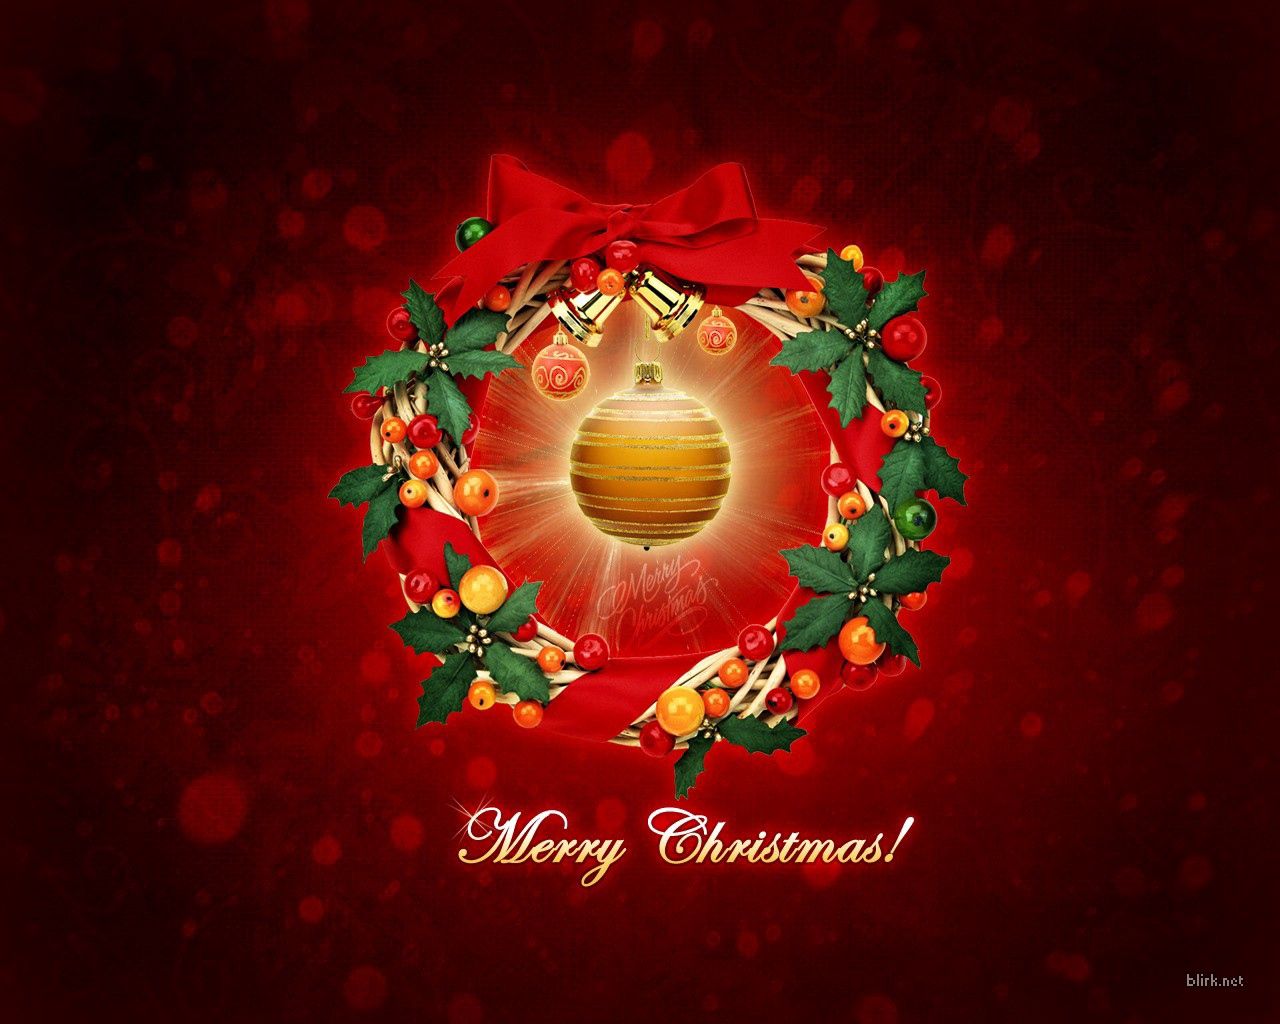 Descargar las imágenes de Navidad gratis para teléfonos Android y iPhone, fondos  de pantalla de Navidad para teléfonos móviles